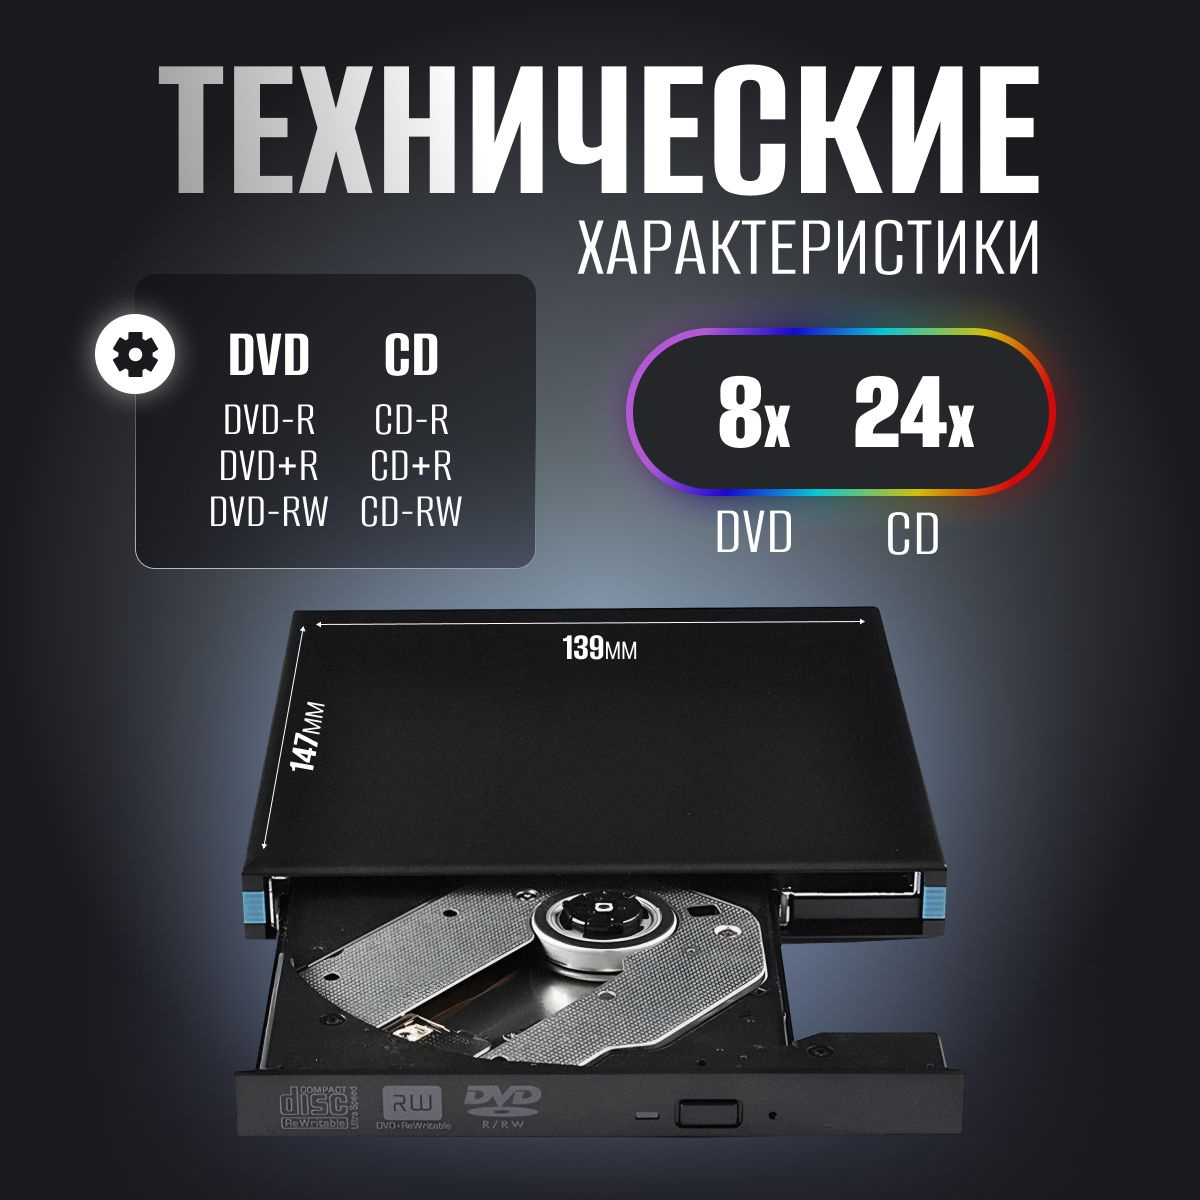 Технические характеристики : Форматы поддержки dvd привод внешний DVD: DVD-R,DVD+R,DVD-RW. СD: CD-R, CD+R, CD-RW. Запись дисковод для ноутбука внешний: DVD-8x, CD-24x.